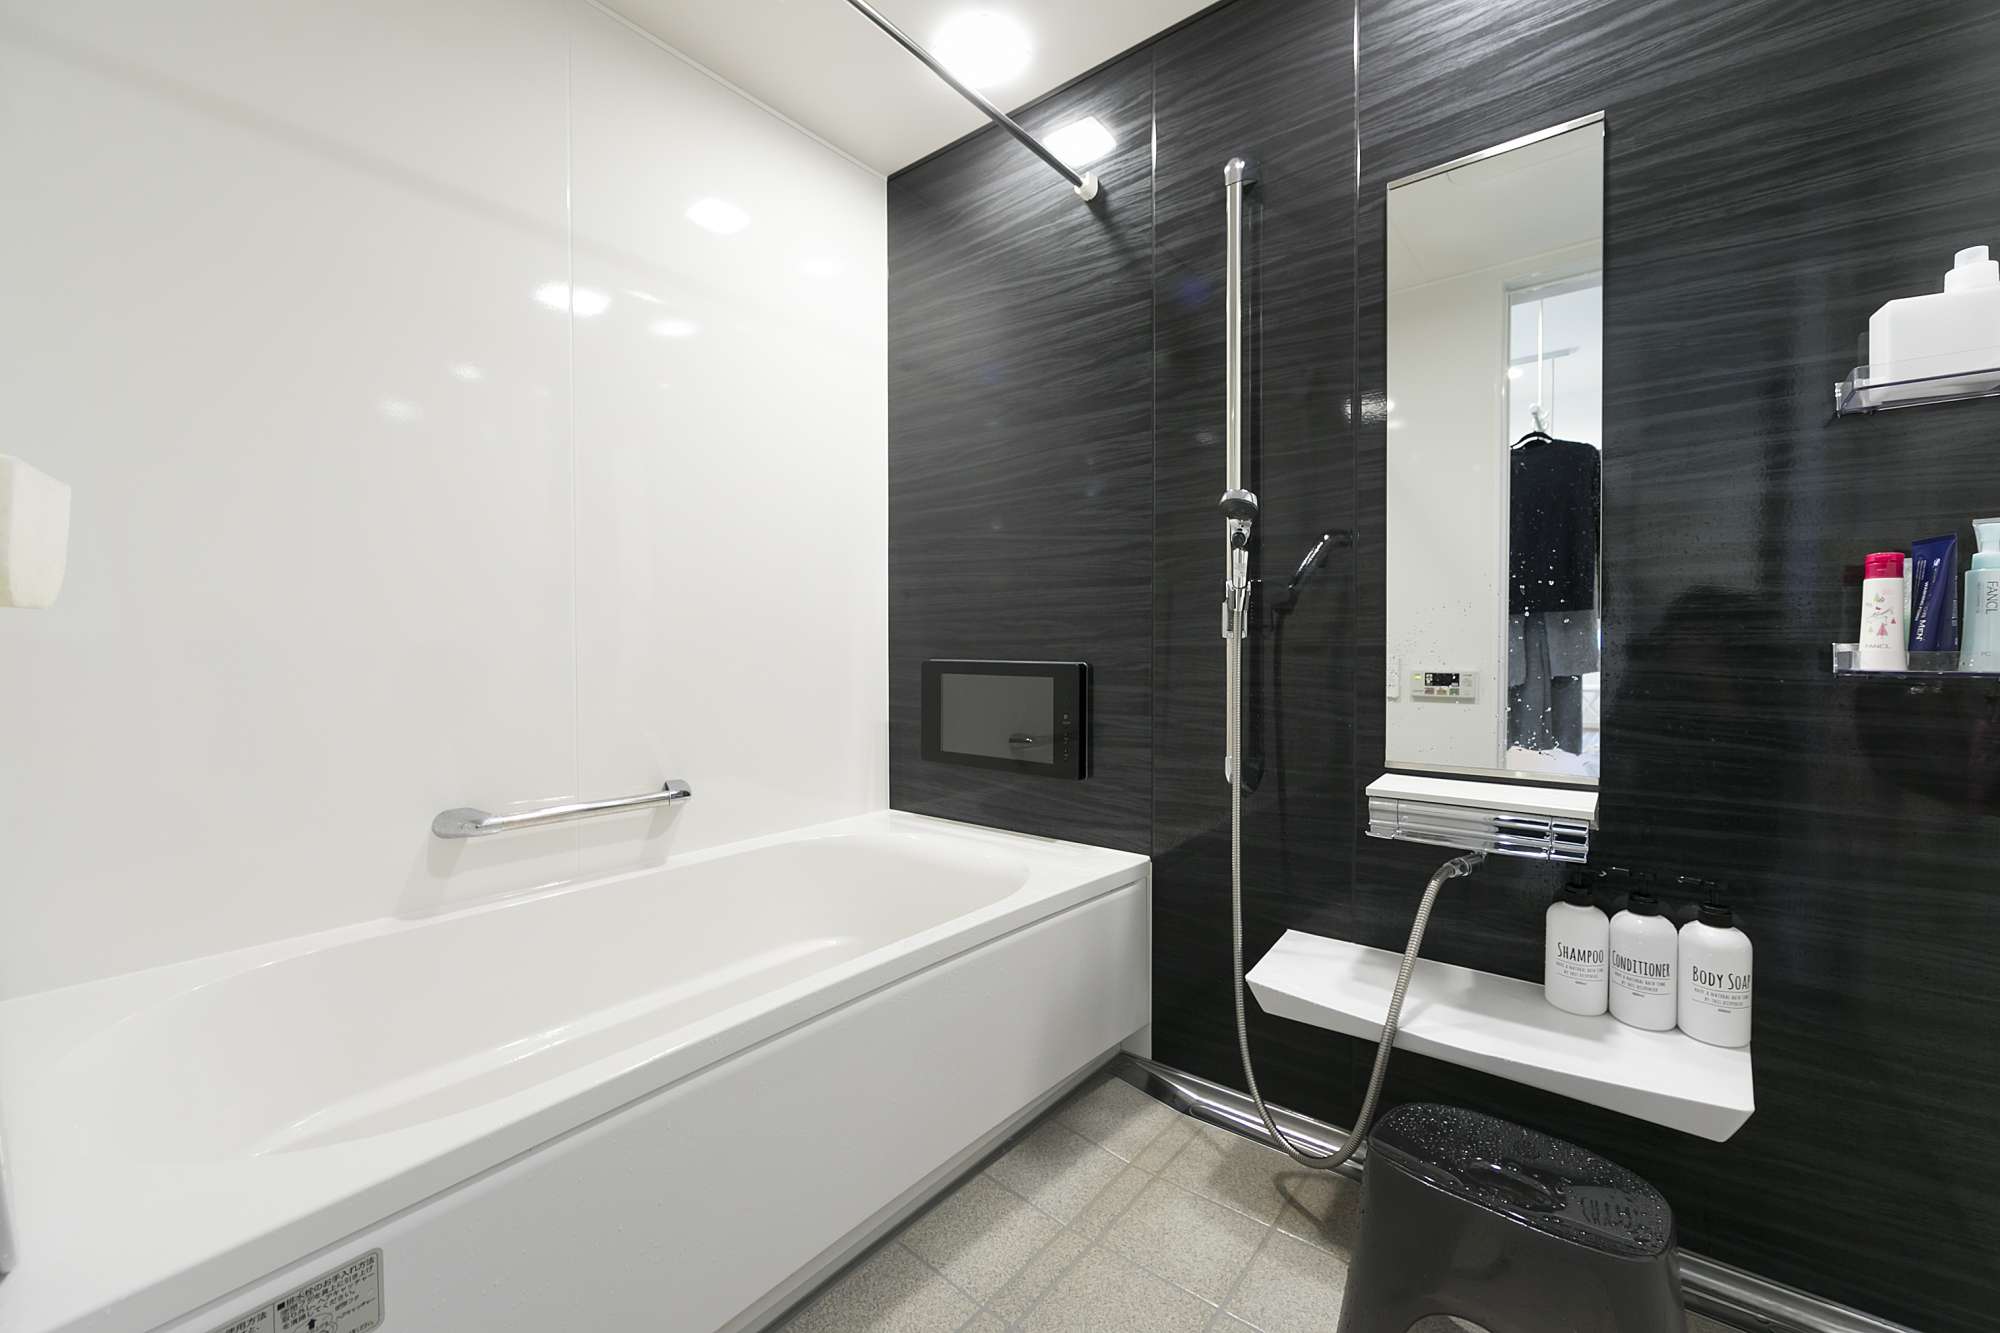 1.25坪のバスルーム - TVがあり、ゆったりとリラックスできるバスルーム。掃除がしやすく機能的なユニットバスを提案。 -  - 